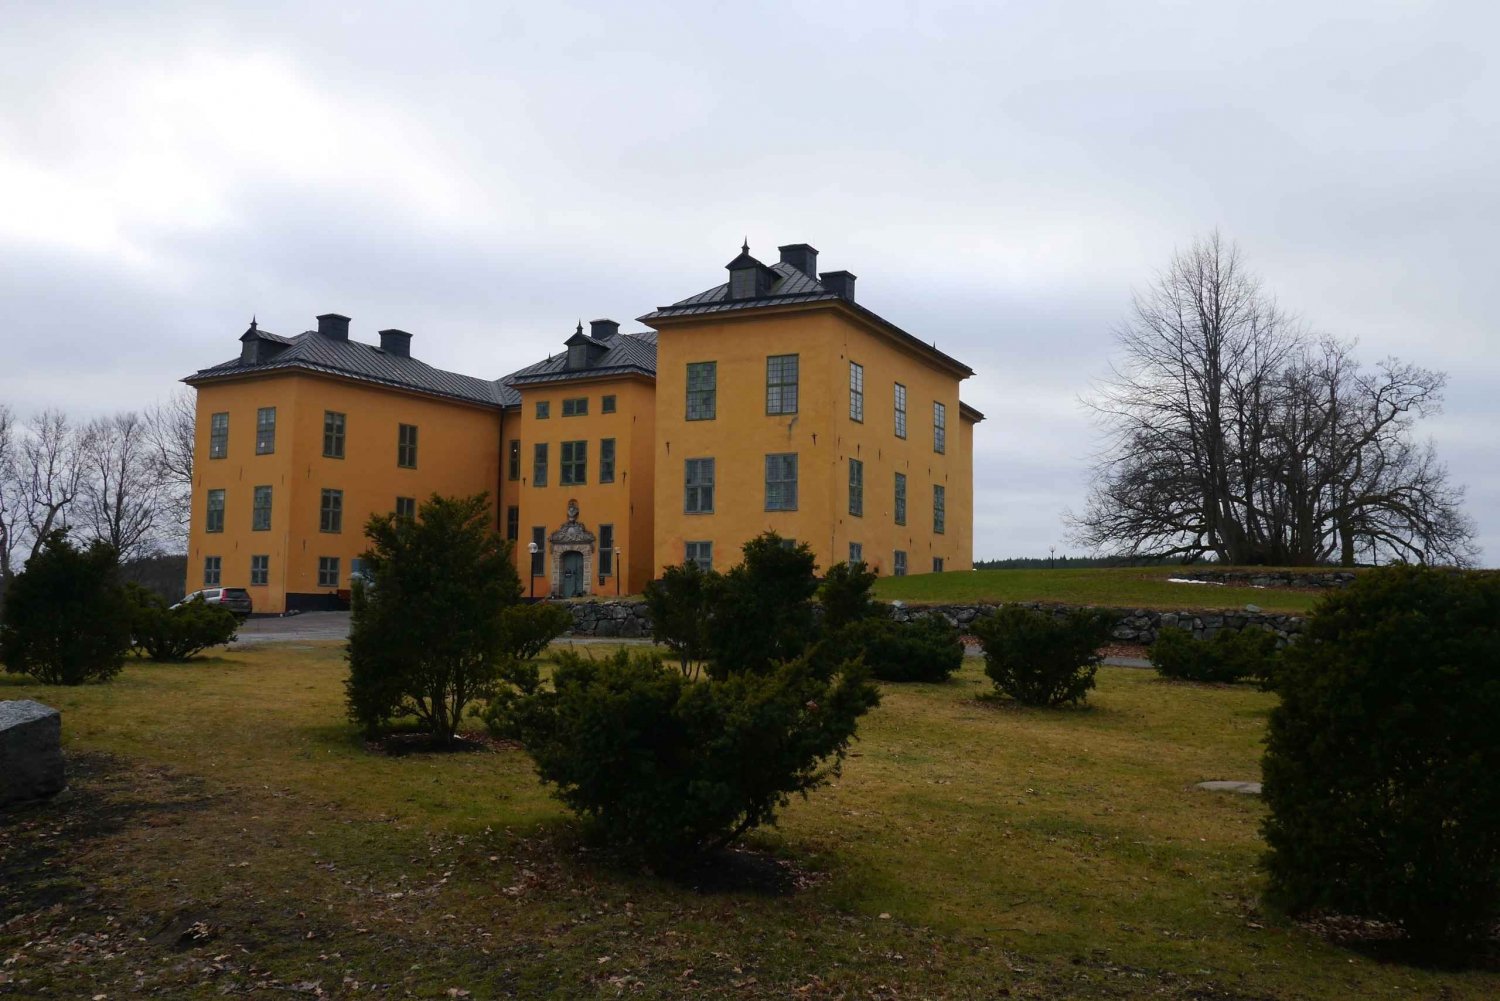 Excursión de 1 día y 7 horas por el Palacio Real y el Castillo desde Estocolmo